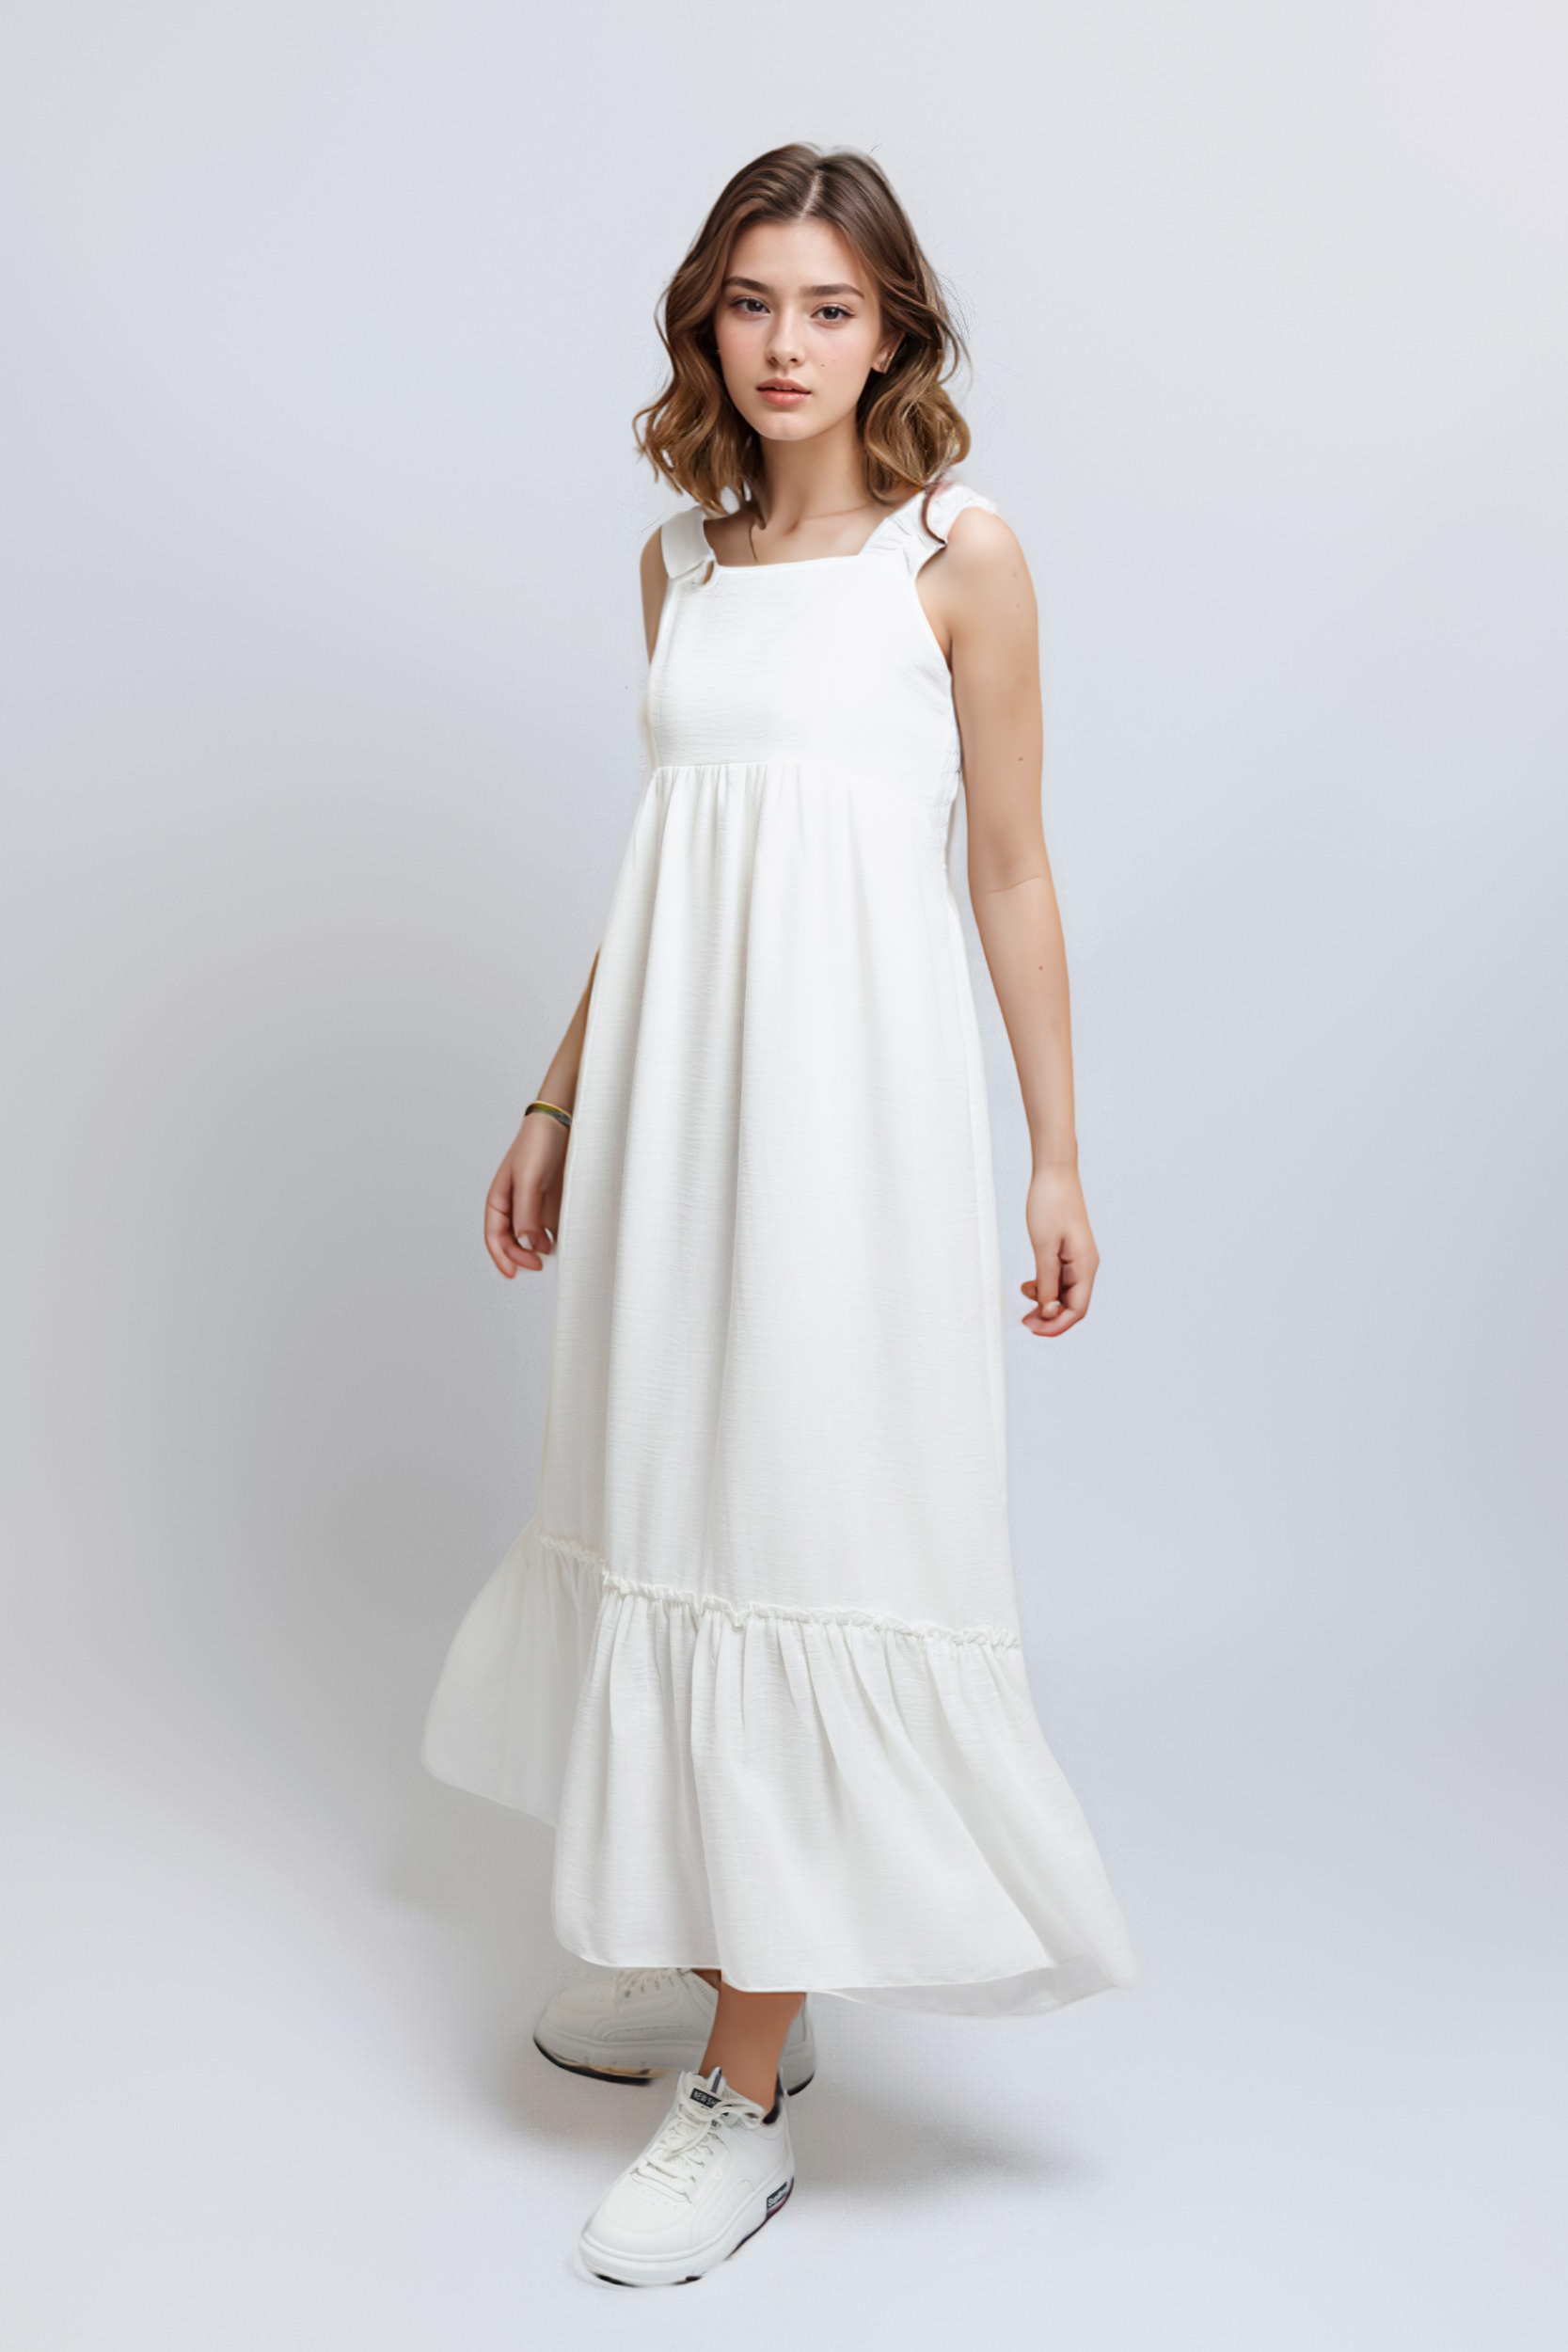 Ruffled Sleeved Dress For Women - White